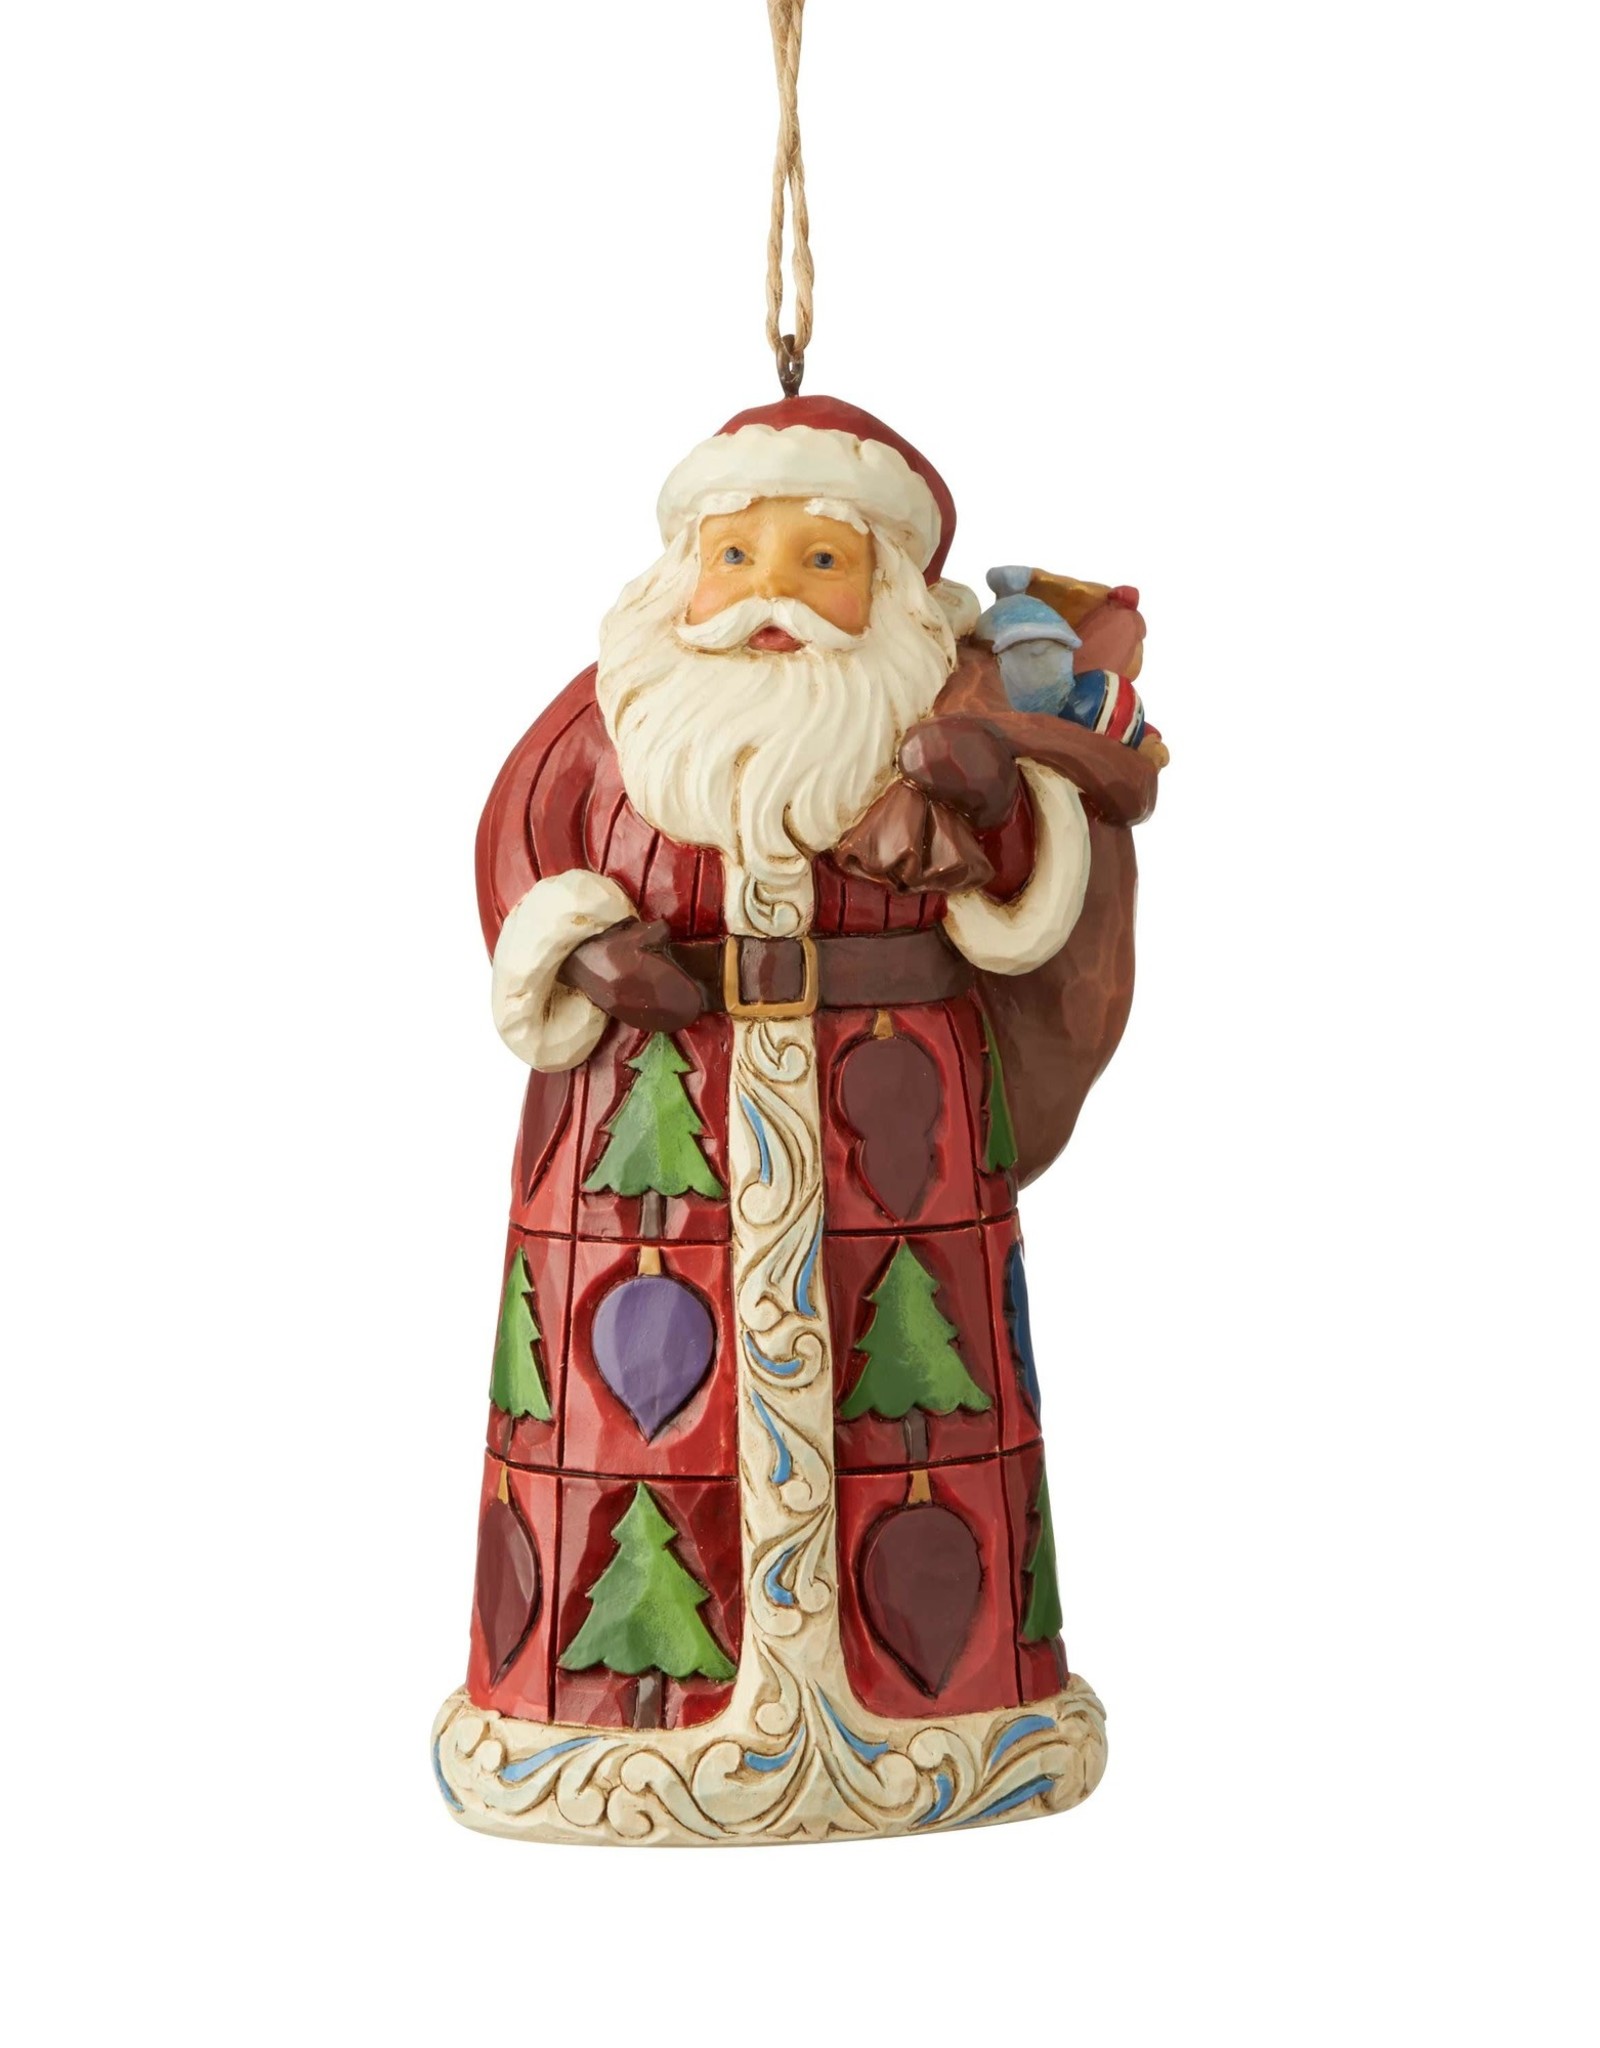 Jim Shore H/O Santa With Toy Bag